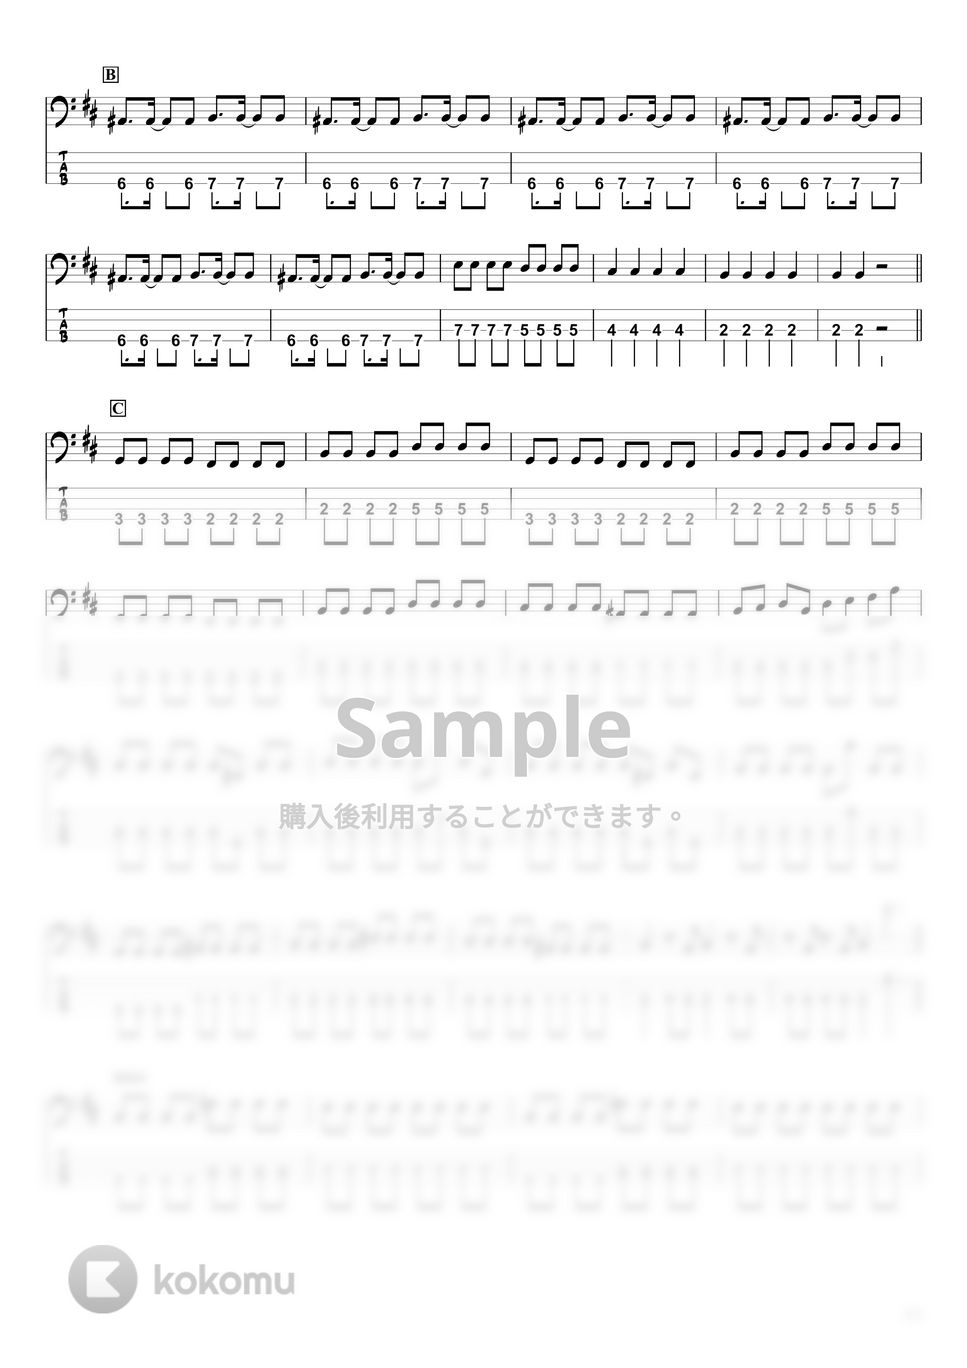 Ado - うっせぇわ (ベースTAB譜 / ☆4弦ベース対応) by swbass